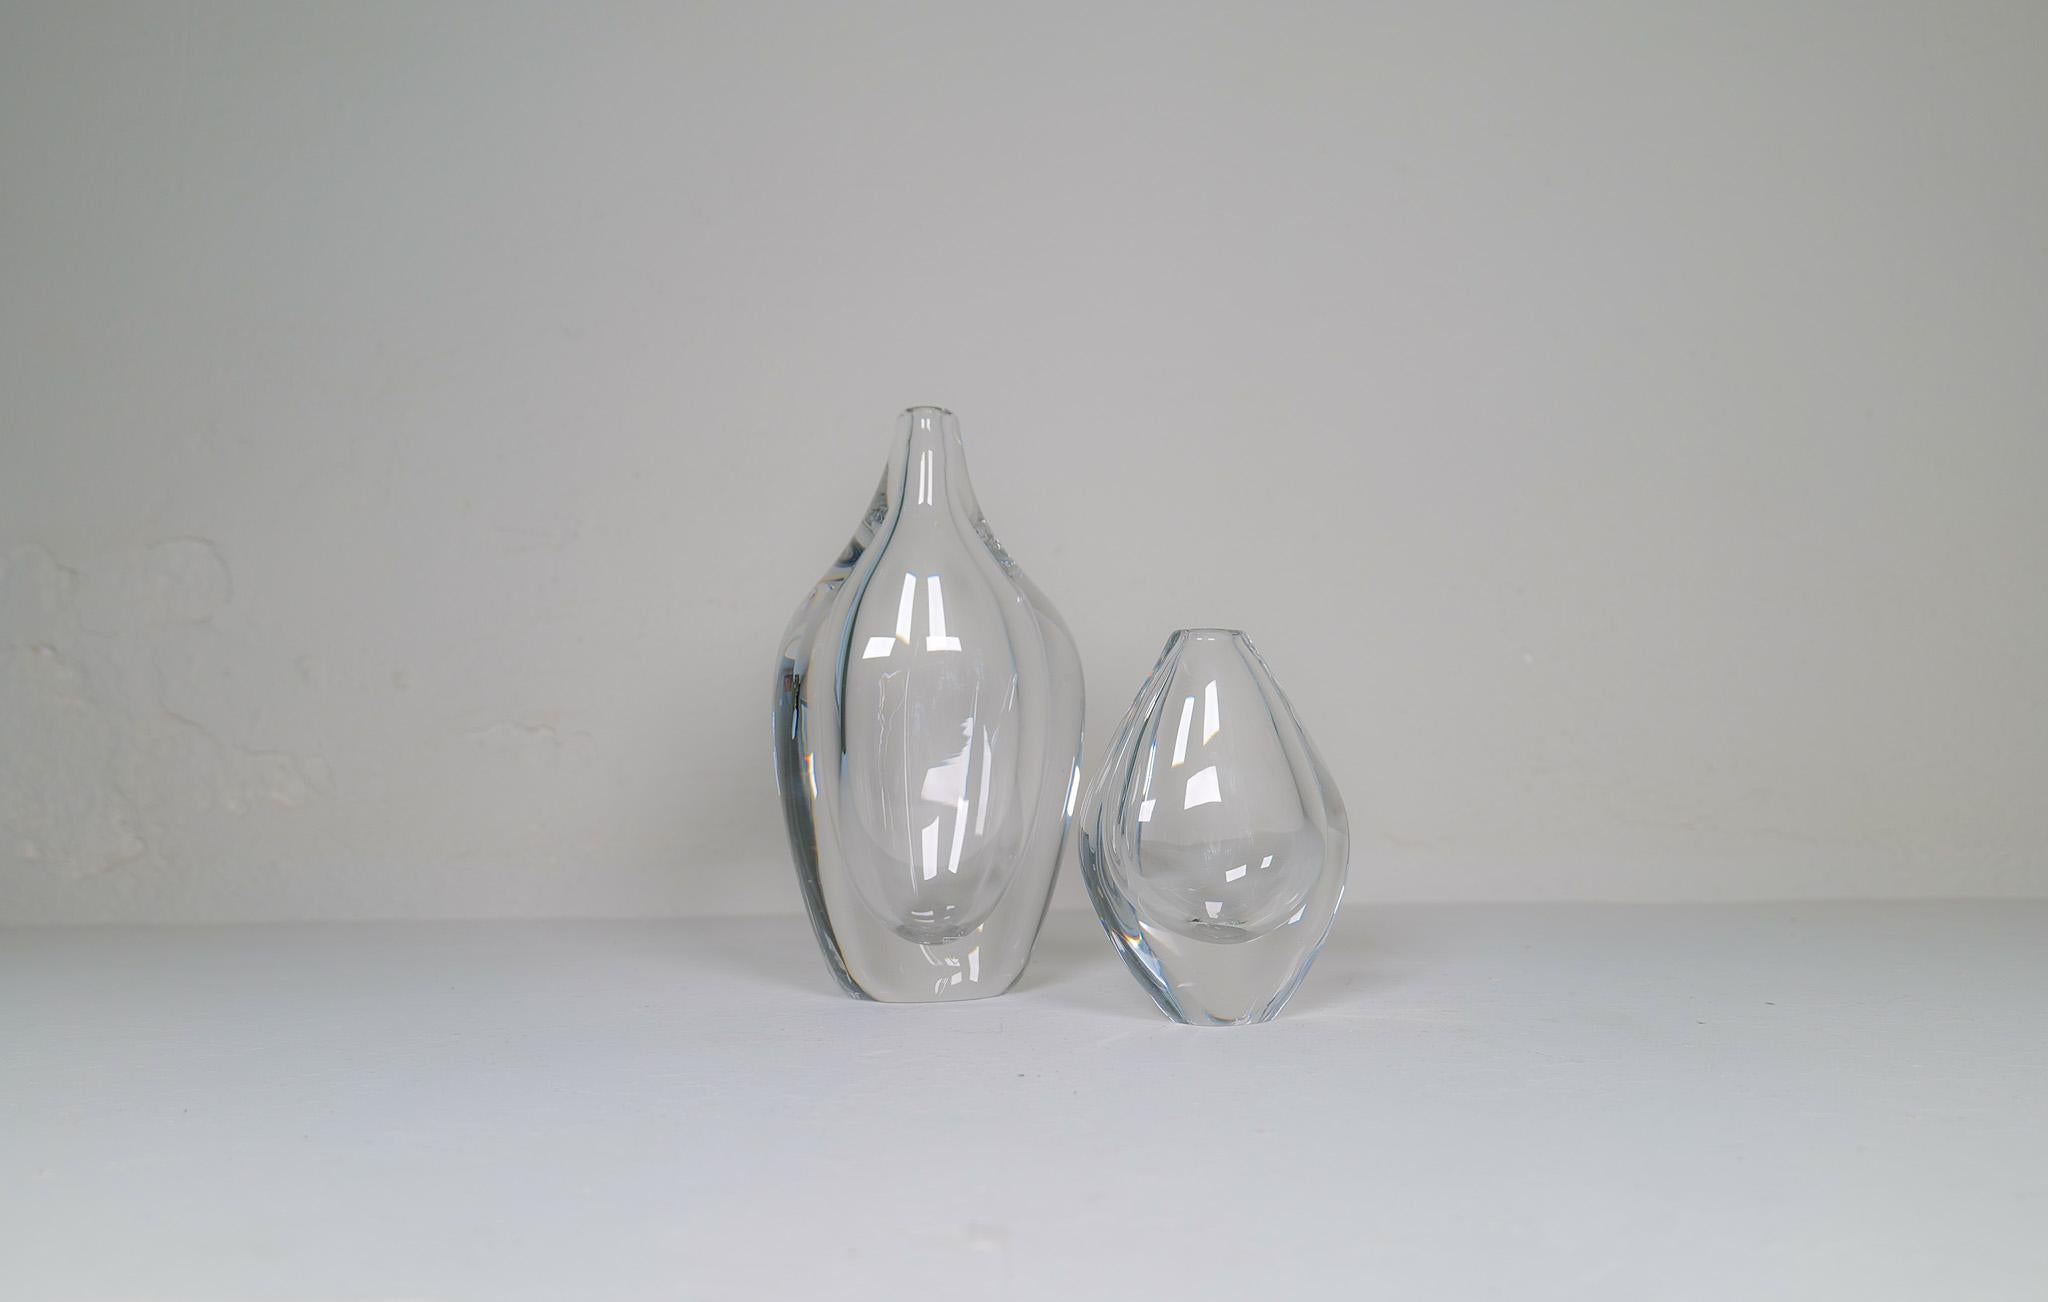 
Wunderschöne Vasen aus Kunstglas, entworfen von Erika Lagerbielke und Nils Landberg, hergestellt bei Orrefors, Schweden. Das große Exemplar ist extrem schwer, und zusammen ergeben sie einen tollen modernen Look. 

Guter Zustand, signiert und